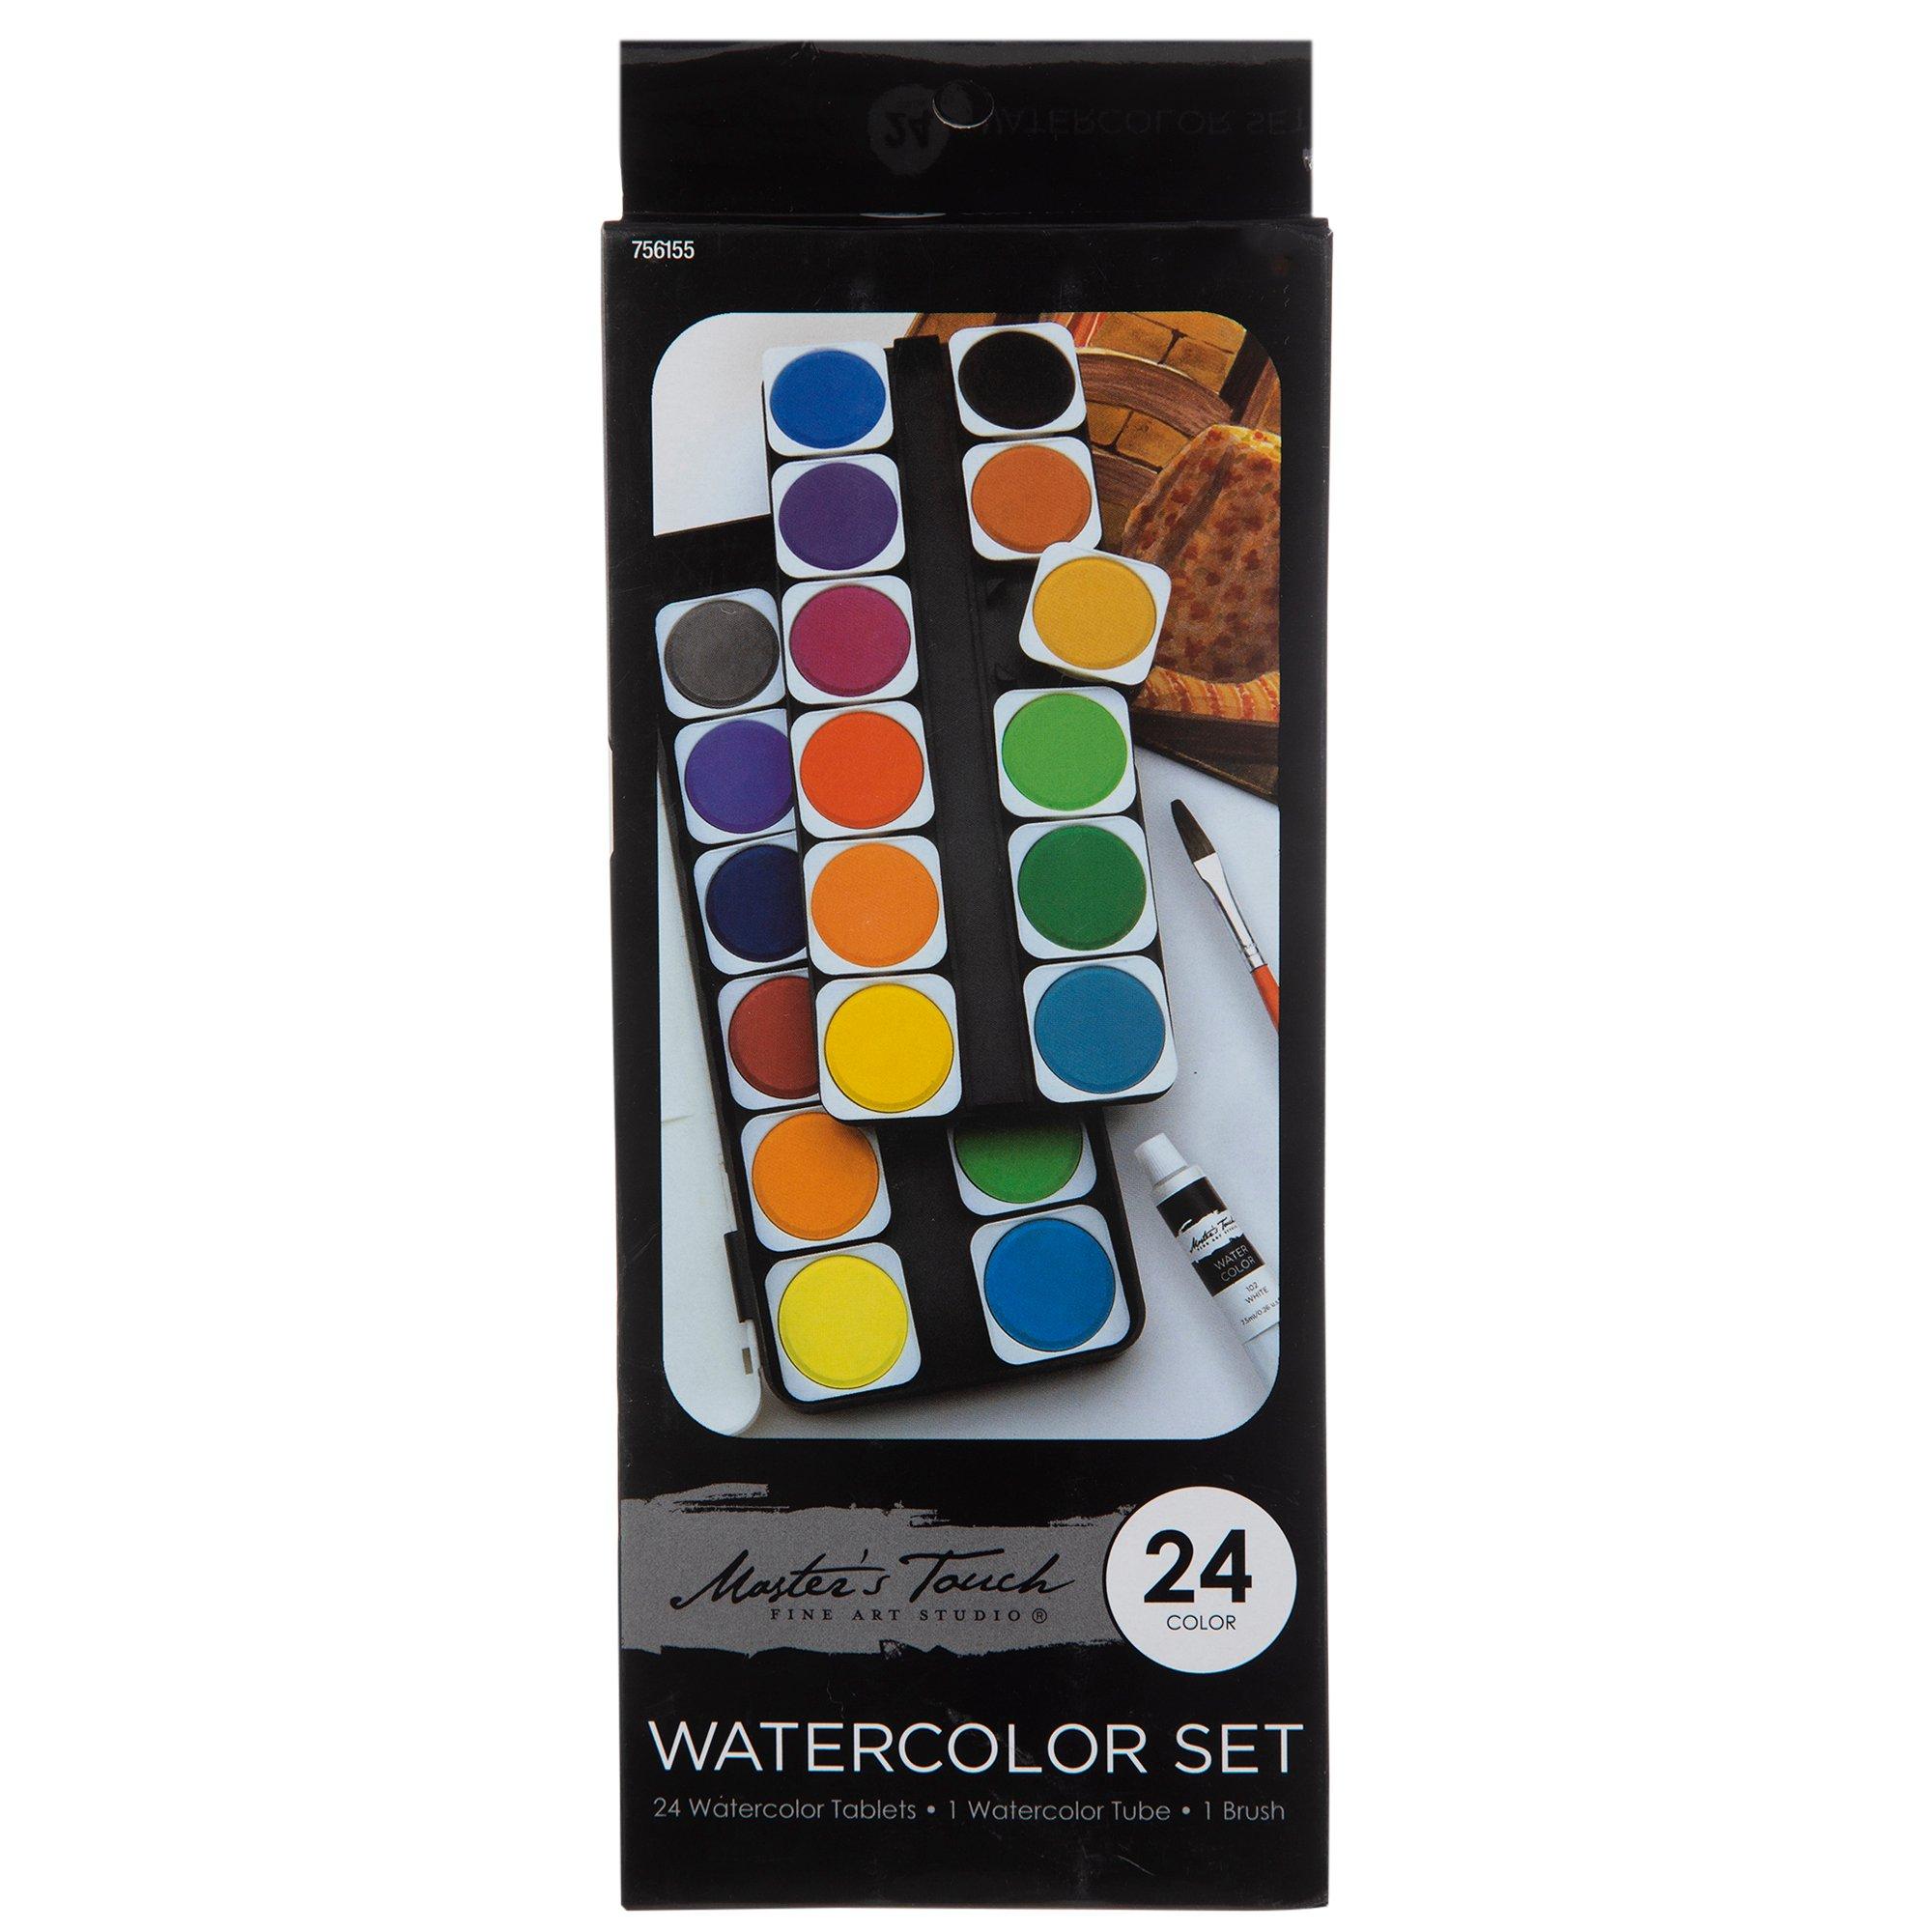 Watercolor Paints & Brush - 36 Piece Set